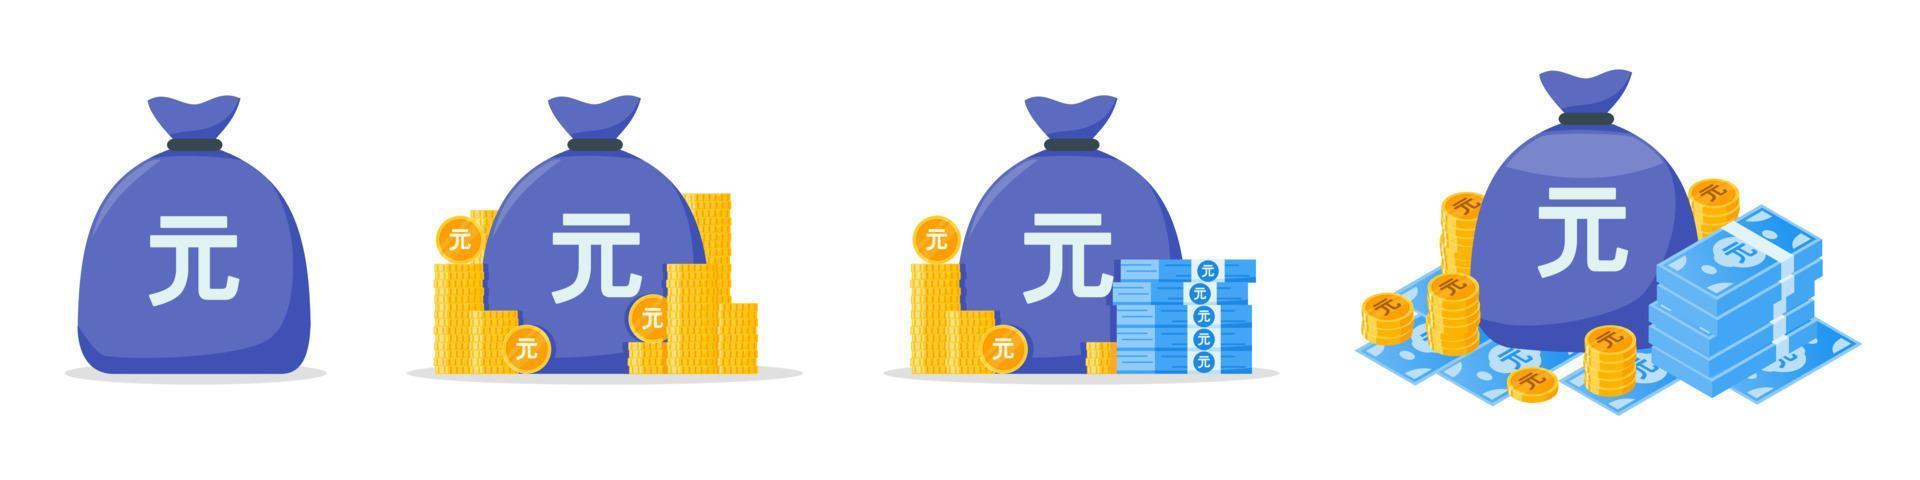 nouveau jeu d'icônes de sac d'argent en dollars de taiwan vecteur